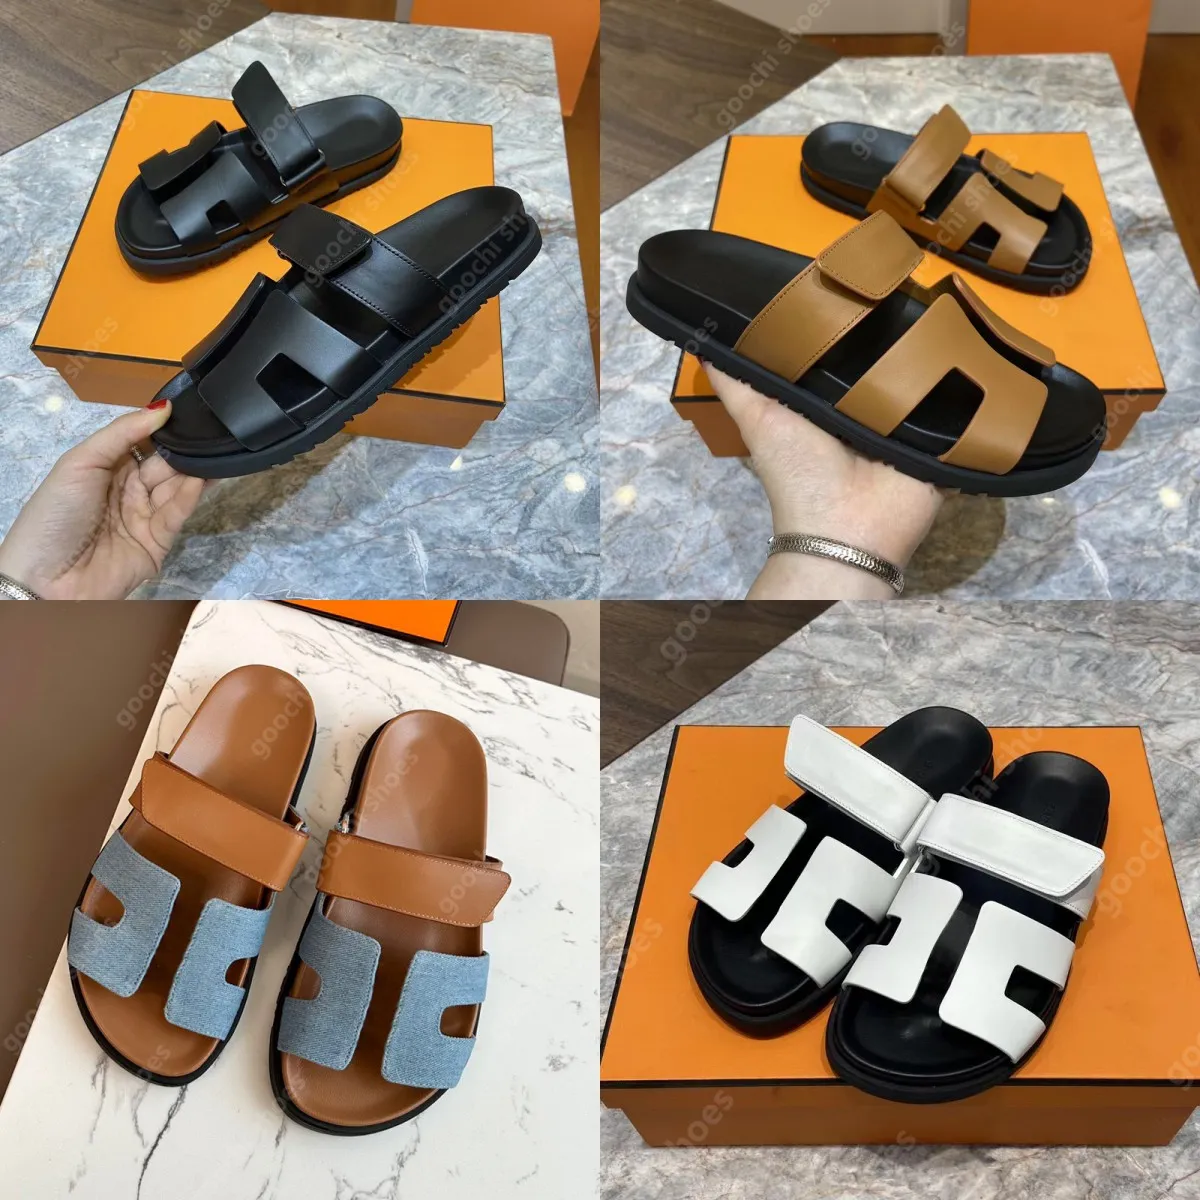 Designer Sandaler Chypre Sandal Sandles Platform Slides Women Sandale Men Slipper Shoes Bottom Päls Flip Flops Summer Casual Beach Sandal Real Leather Top Quality 10a